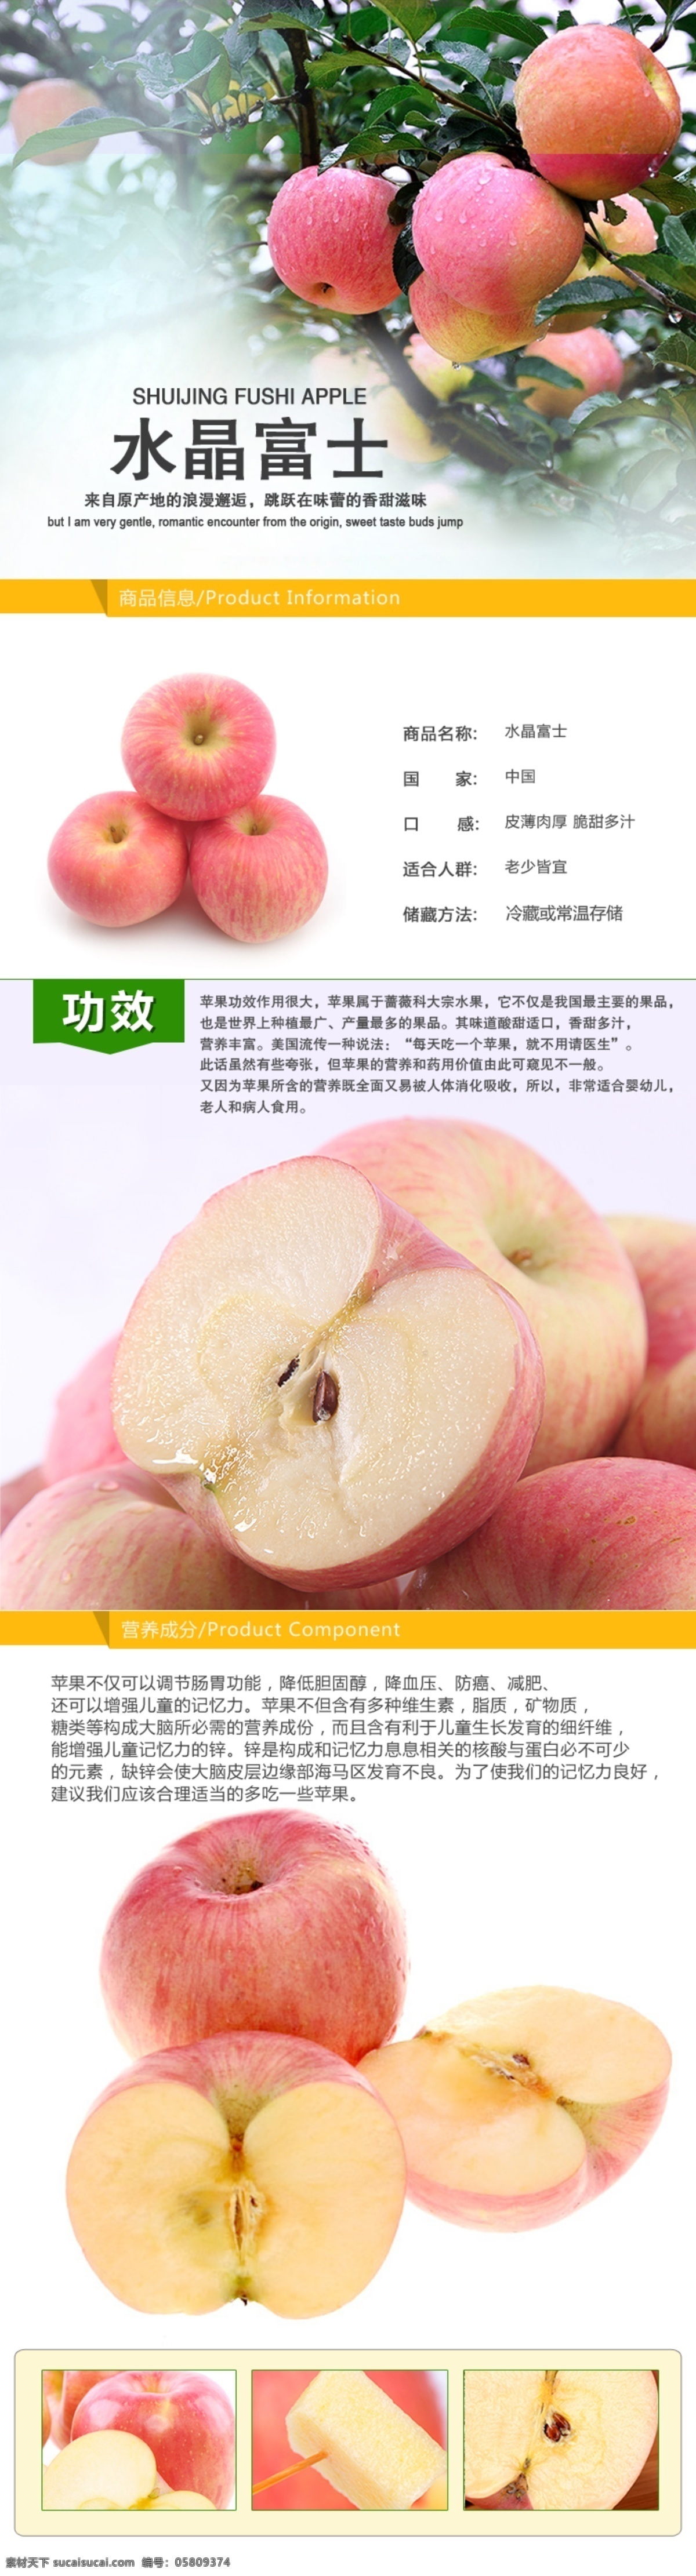 生鲜 水果 苹果 苹果详情页 水晶 富士 详情 页 白色